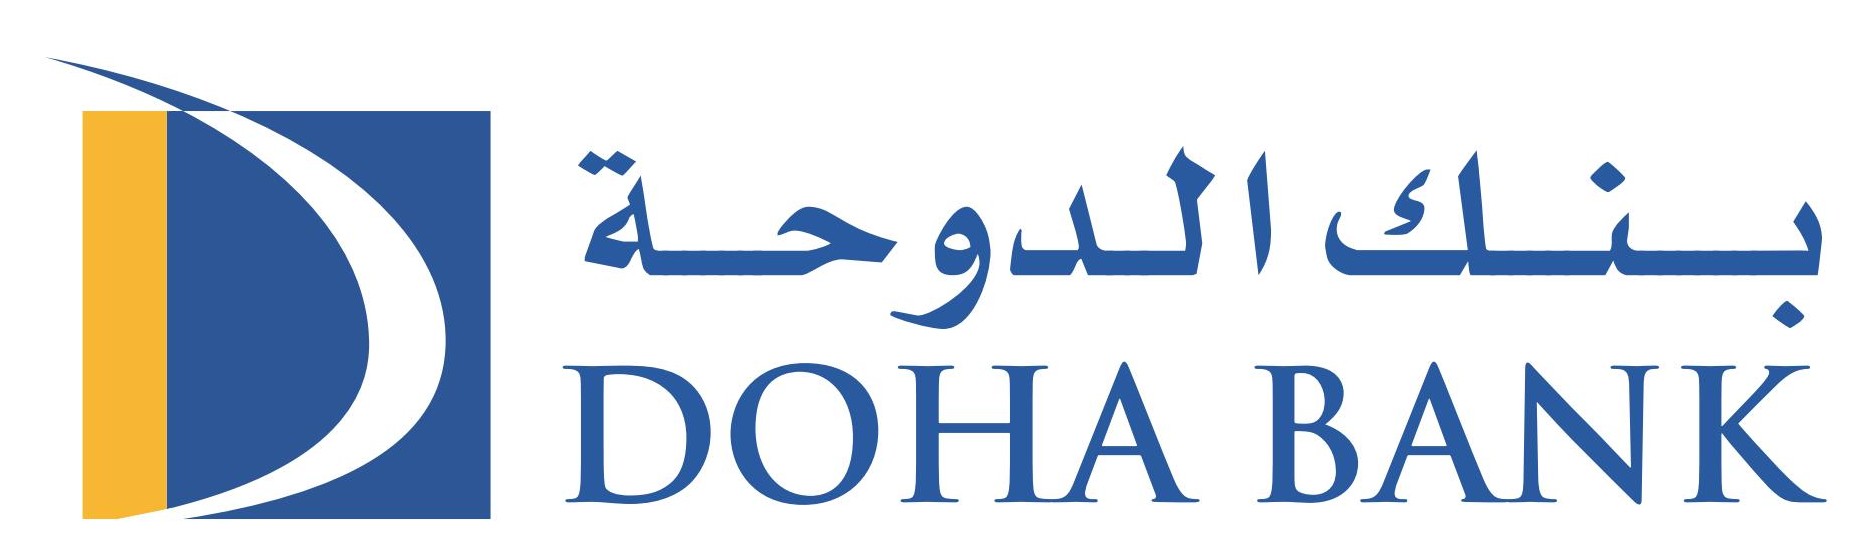 Doha Bank Brand Logo